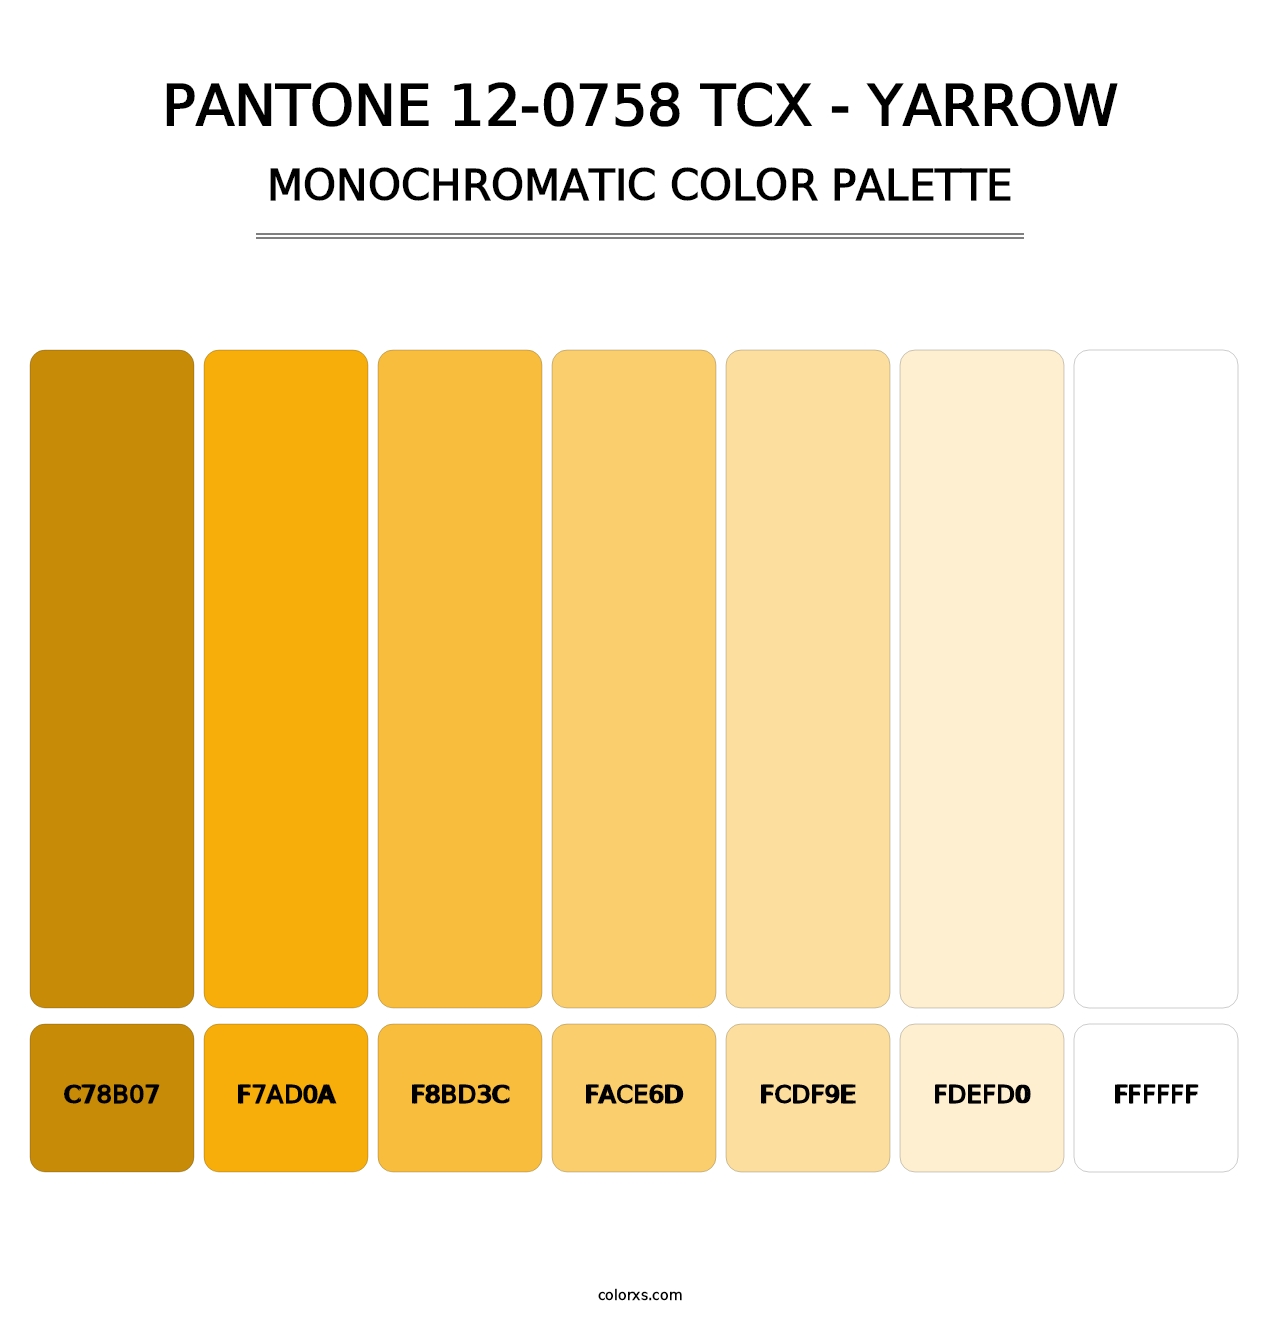 PANTONE 12-0758 TCX - Yarrow - Monochromatic Color Palette